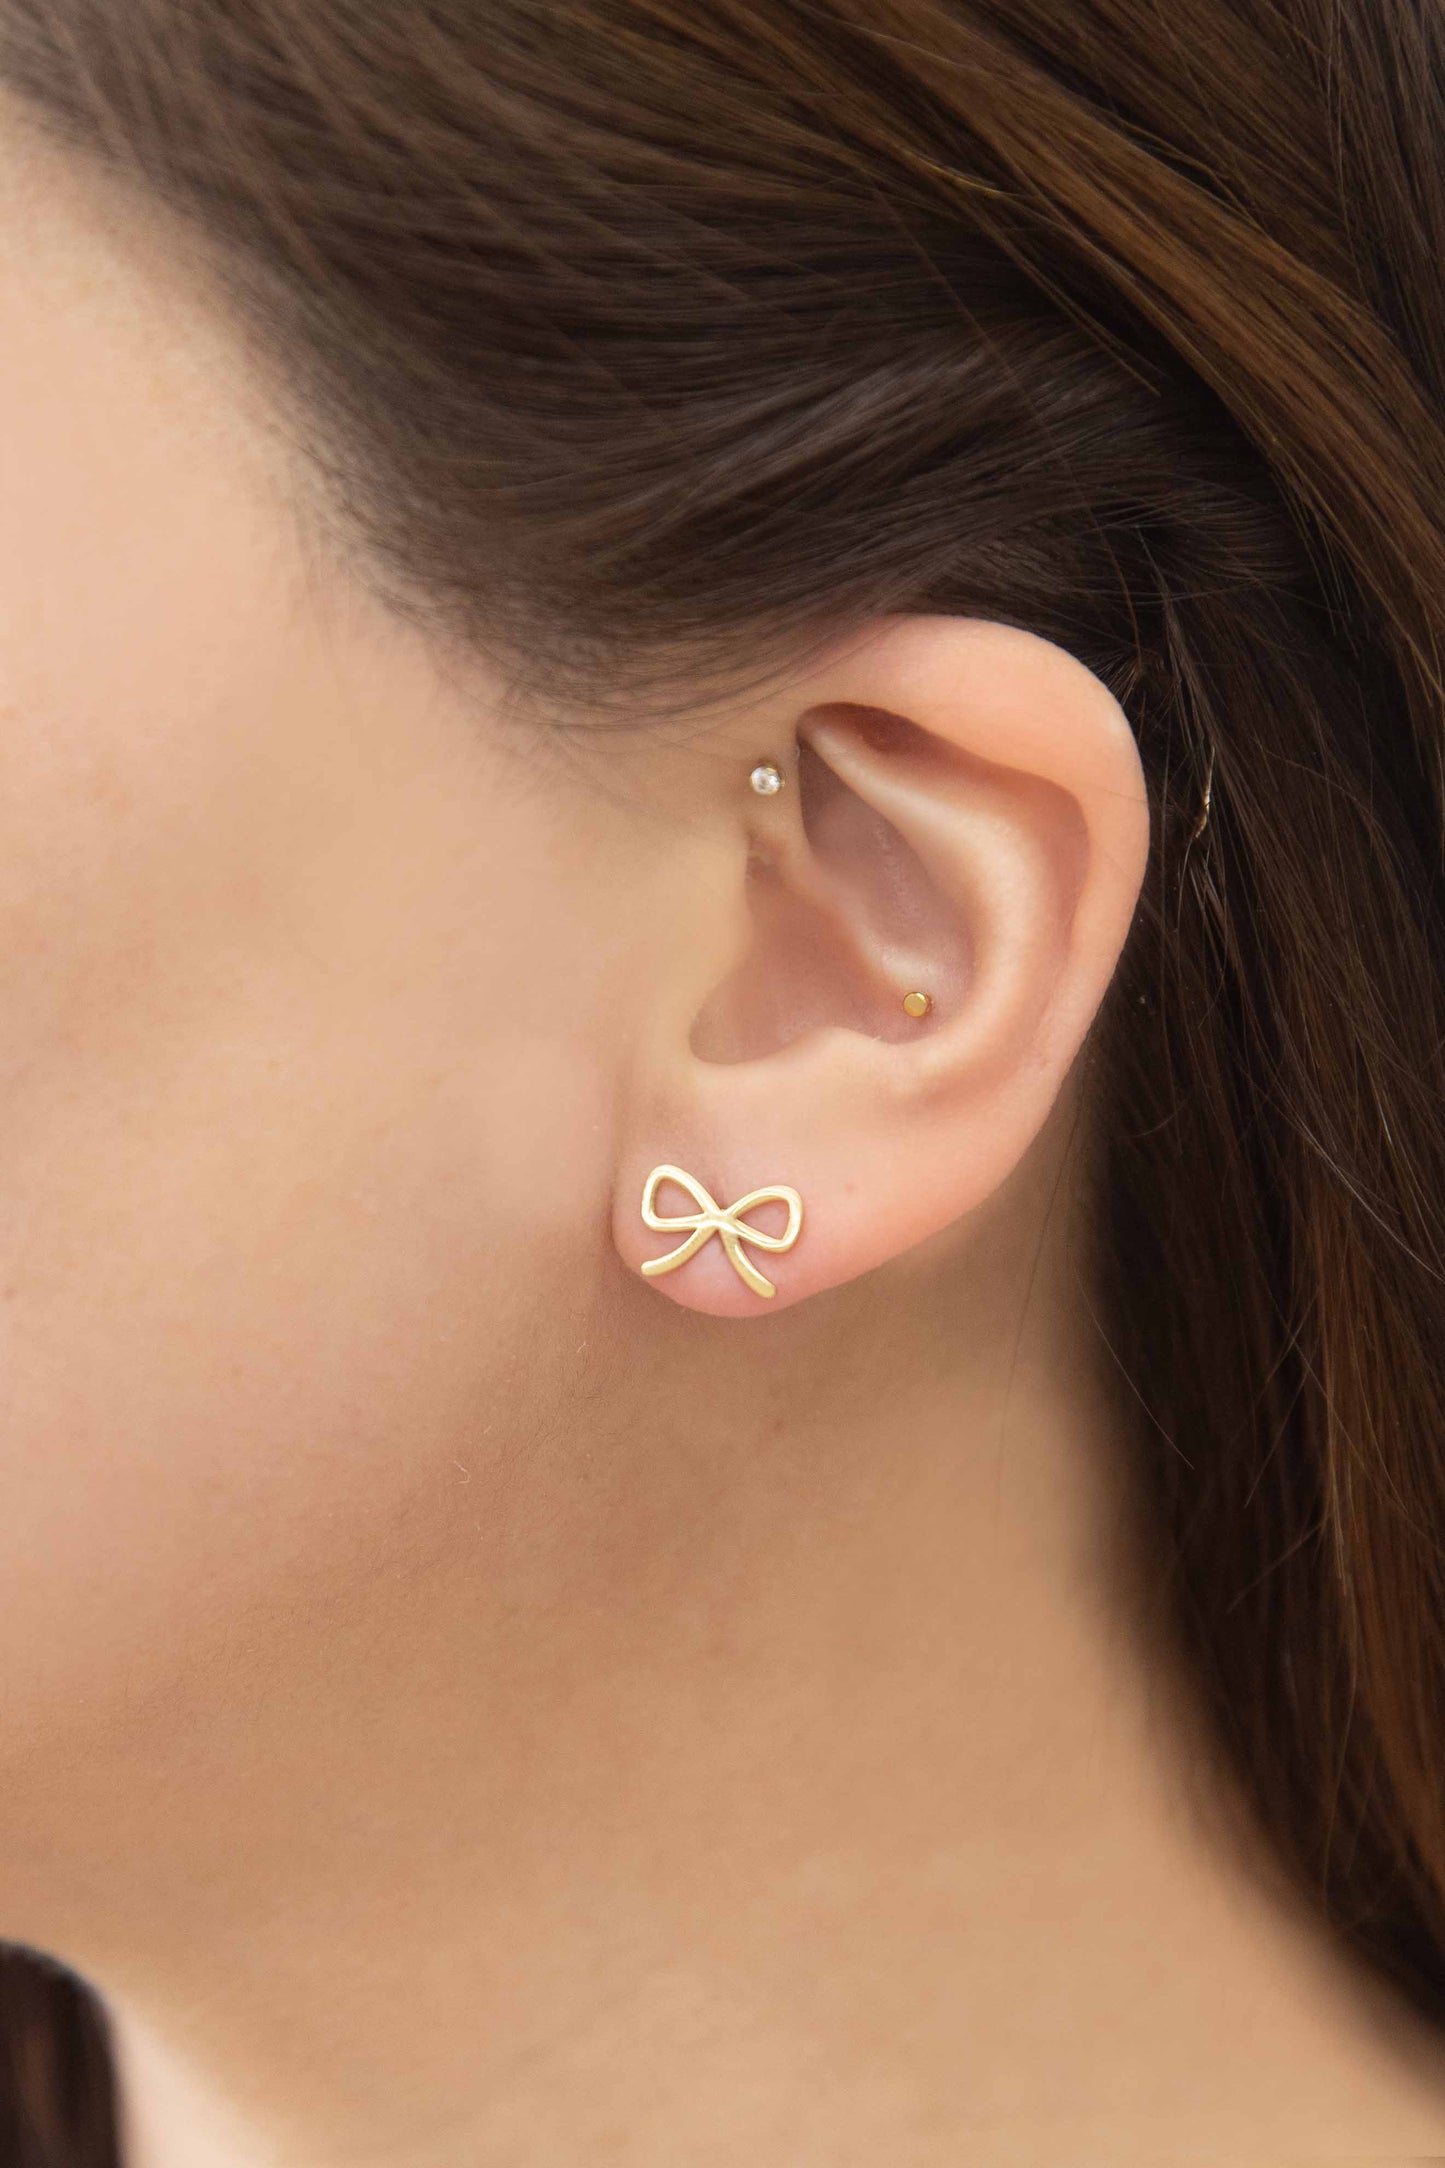 Cute Bow Stud Earrings | Gold